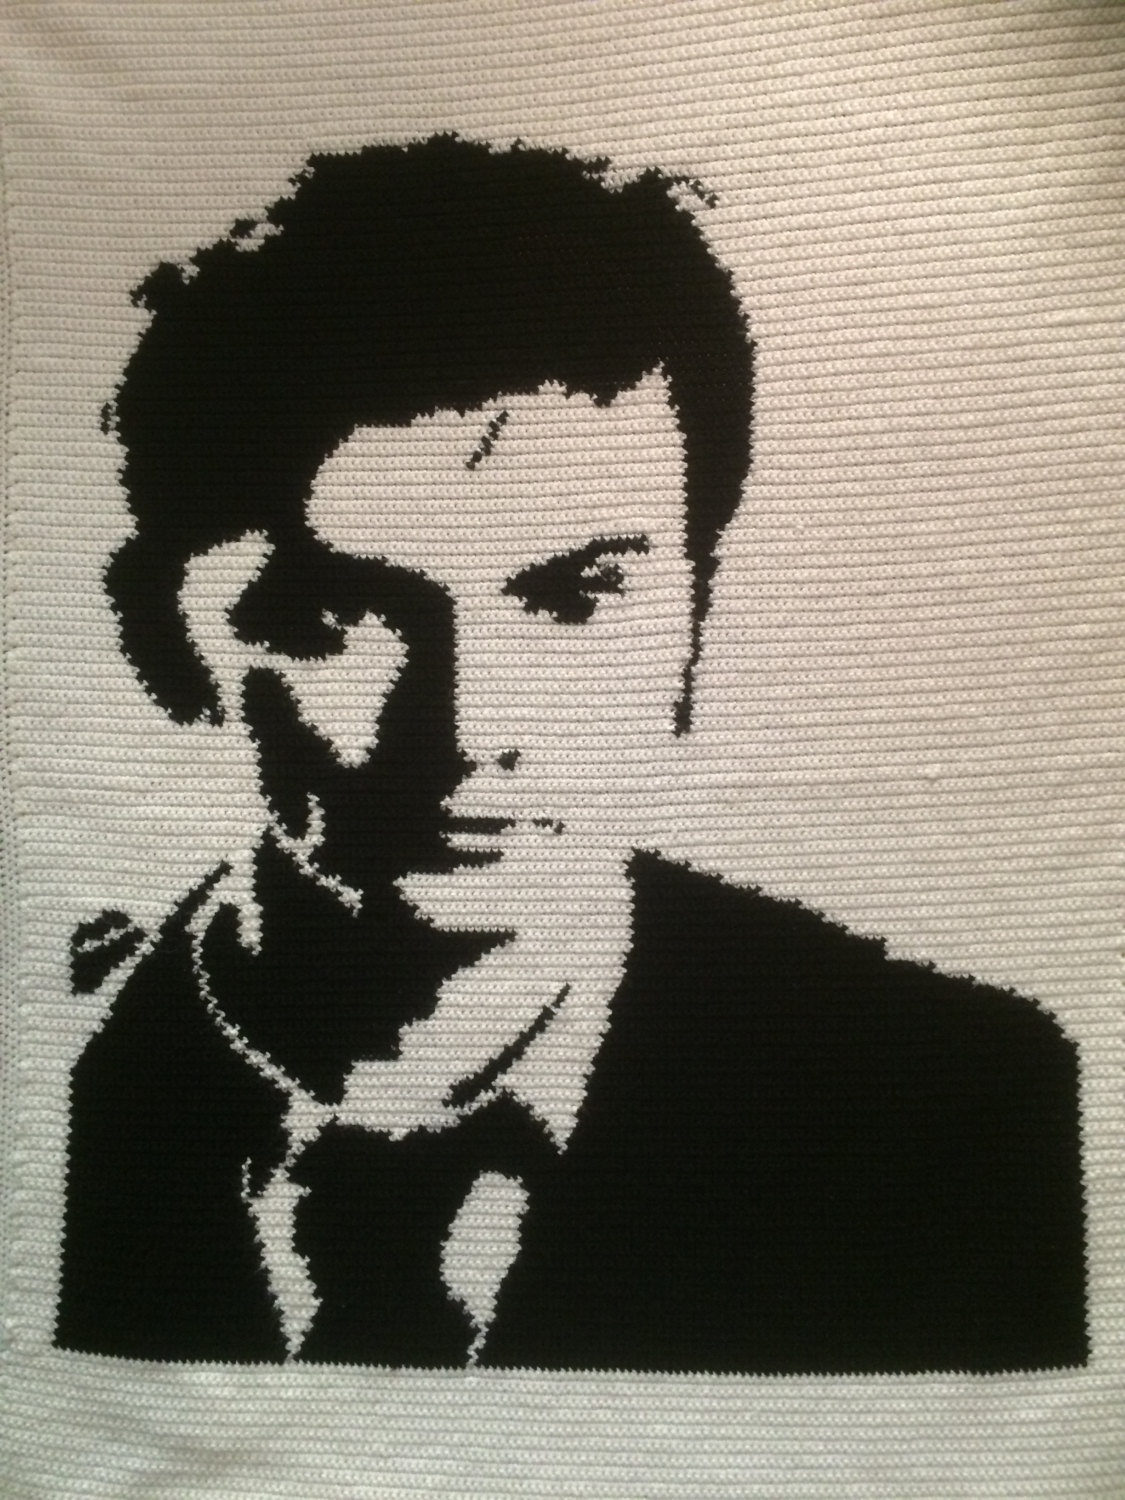 Doctor Who Crochet Blanket Pattern Tenth Doctor David Tennant Crochet Blanket Pattern Only Etsy